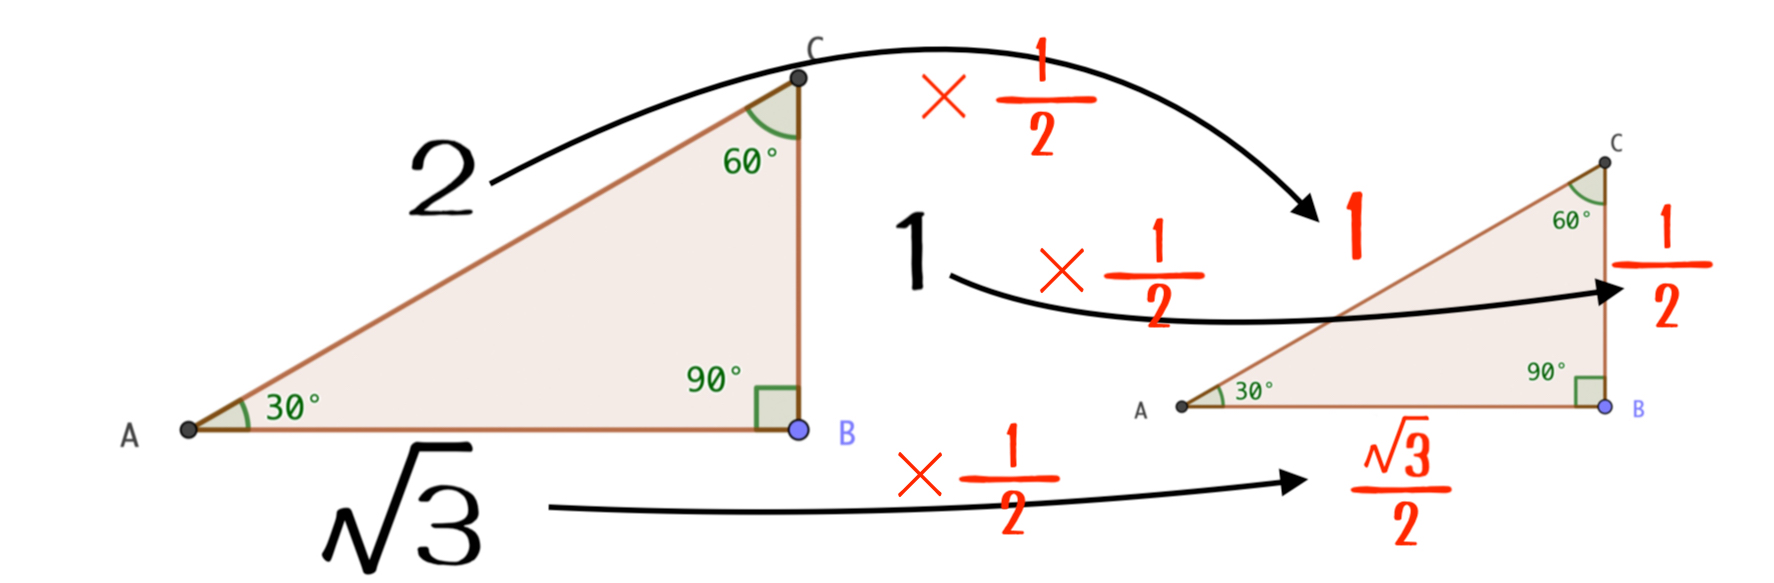 直角三角形の相似関係